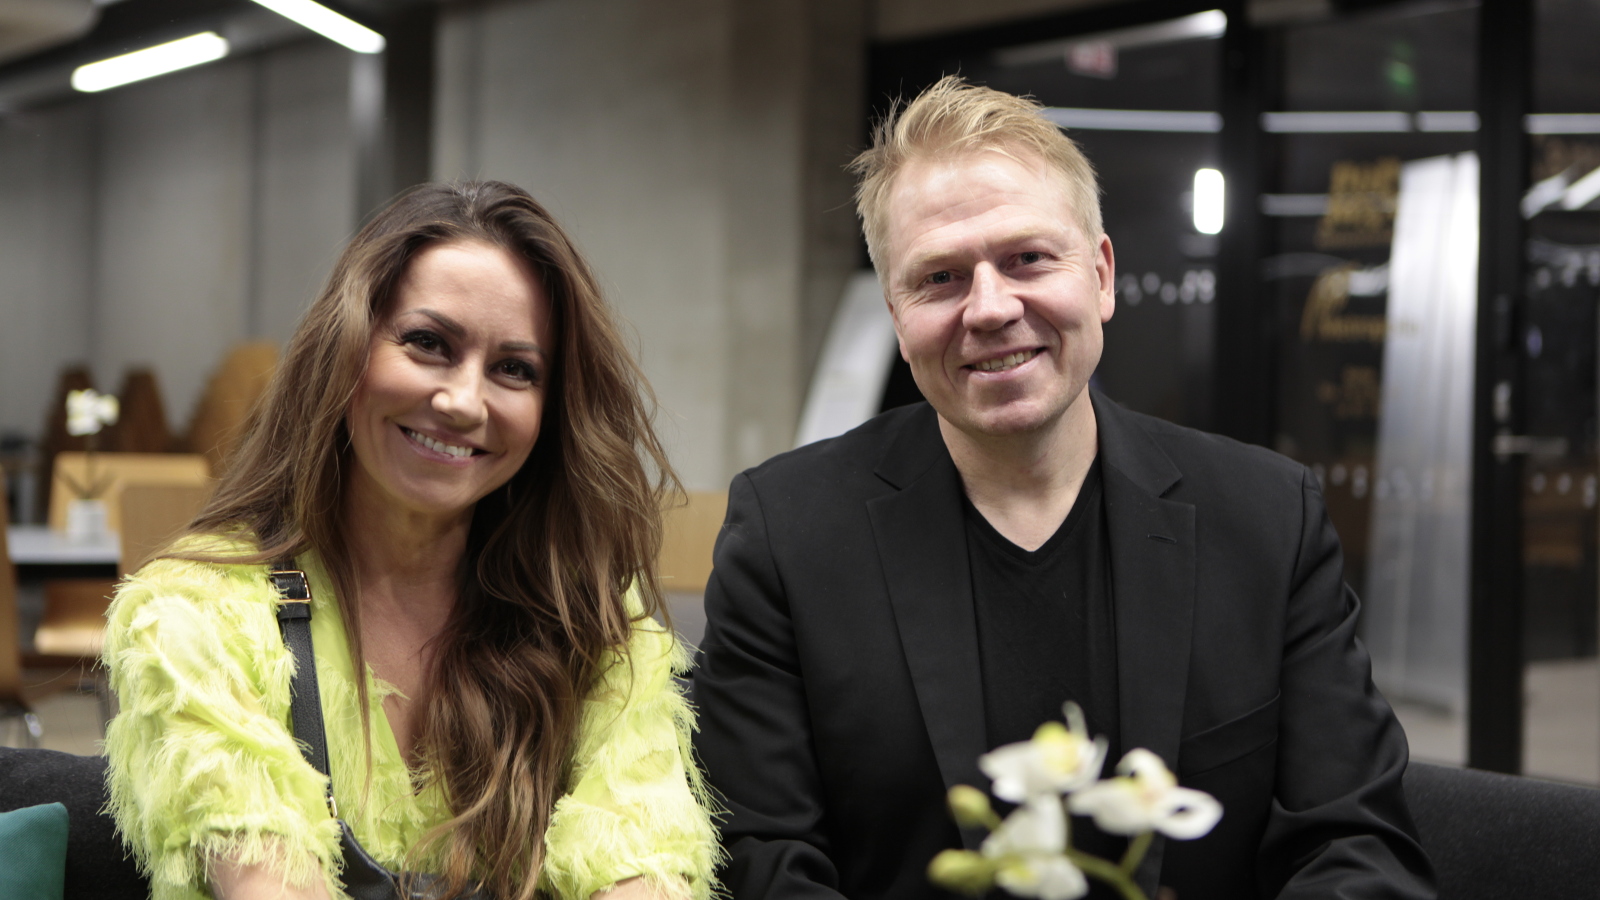 Kuvassa ovat puolivartalokuvassa vasemmalla Jaana Pelkonen vaalean vihreässä röyhelöisessä mekossa ja Aki Riihilahti mustassa t-paidassa ja takissa.